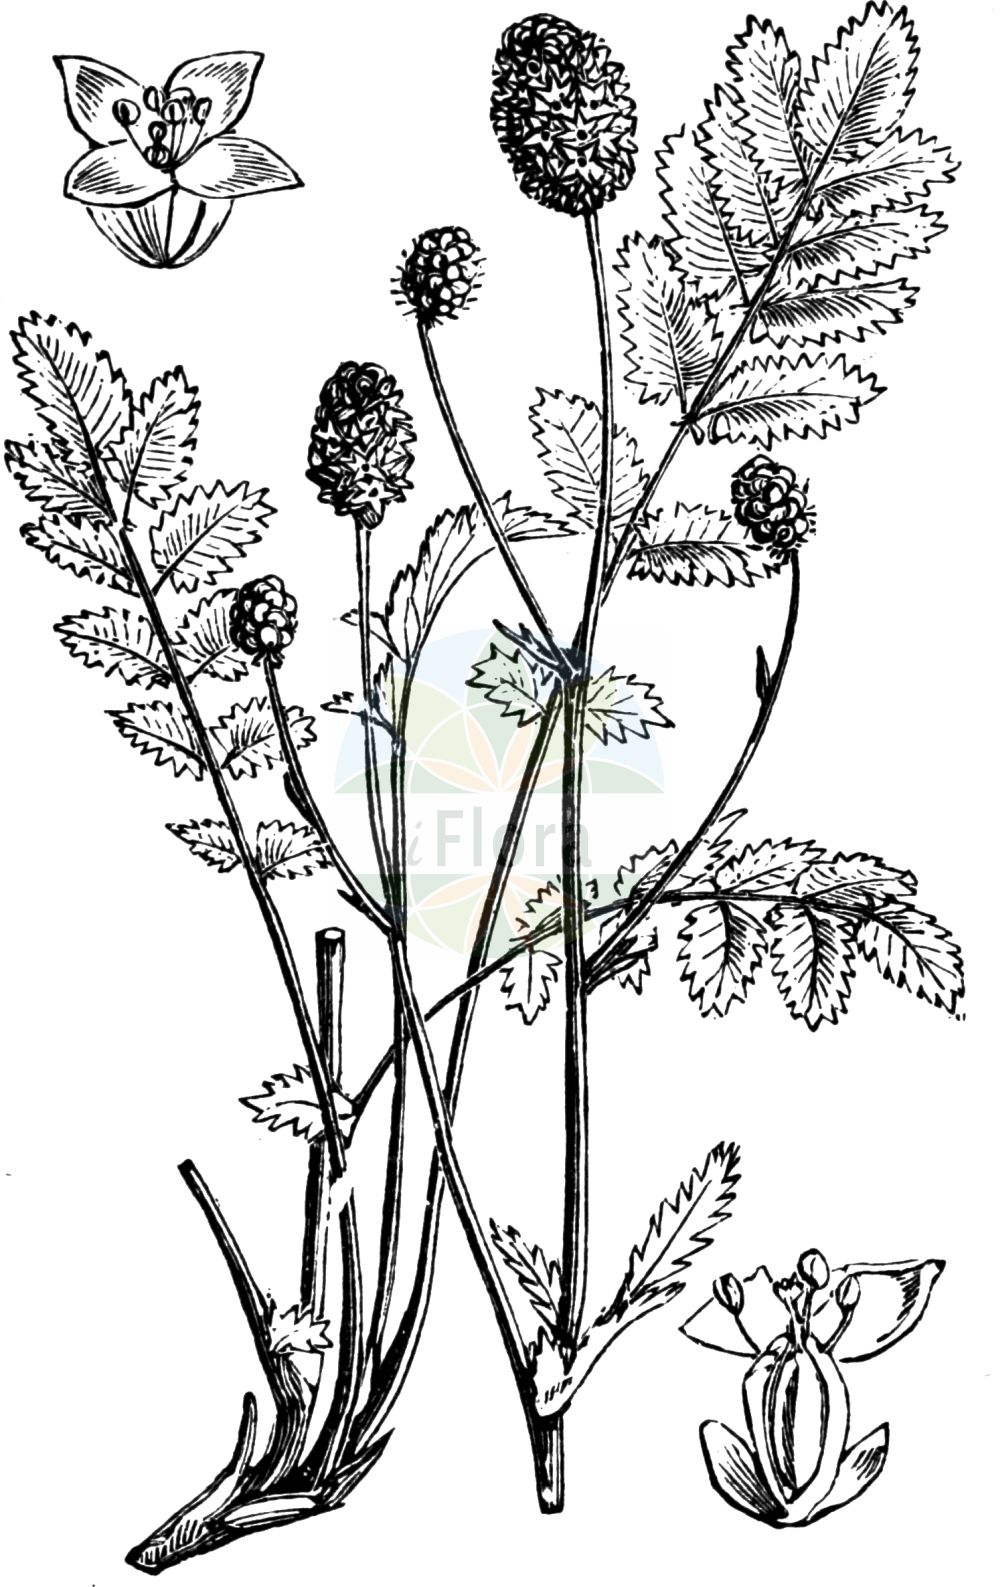 Historische Abbildung von Sanguisorba officinalis (Großer Wiesenknopf - Great Burnet). Das Bild zeigt Blatt, Bluete, Frucht und Same. ---- Historical Drawing of Sanguisorba officinalis (Großer Wiesenknopf - Great Burnet). The image is showing leaf, flower, fruit and seed.(Sanguisorba officinalis,Großer Wiesenknopf,Great Burnet,Pimpinella officinalis,Poterium boreale,Poterium officinale,Sanguisorba altissima,Sanguisorba andersonii,Sanguisorba auriculata,Sanguisorba bracteosa,Sanguisorba carnea,Sanguisorba cordifolia,Sanguisorba cylindrica,Sanguisorba formosana,Sanguisorba glandulosa,Sanguisorba hispanica,Sanguisorba komaroviana,Sanguisorba longifolia,Sanguisorba major,Sanguisorba media,Sanguisorba menziesii,Sanguisorba microcephala,Sanguisorba montana,Sanguisorba nudicaulis,Sanguisorba officinalis,Sanguisorba polygama,Sanguisorba praecox,Sanguisorba rectispica,Sanguisorba rubra,Sanguisorba sabauda,Sanguisorba serotina,Sanguisorba serpentina,Sanguisorba taurica,Grosser Wiesenknopf,Great Burnet,Garden Burnet,Official Burnet,Greater Burnet,Sanguisorba,Wiesenknopf,Burnet,Rosaceae,Rosengewächse,Rose family,Blatt,Bluete,Frucht,Same,leaf,flower,fruit,seed,Fitch et al. (1880))